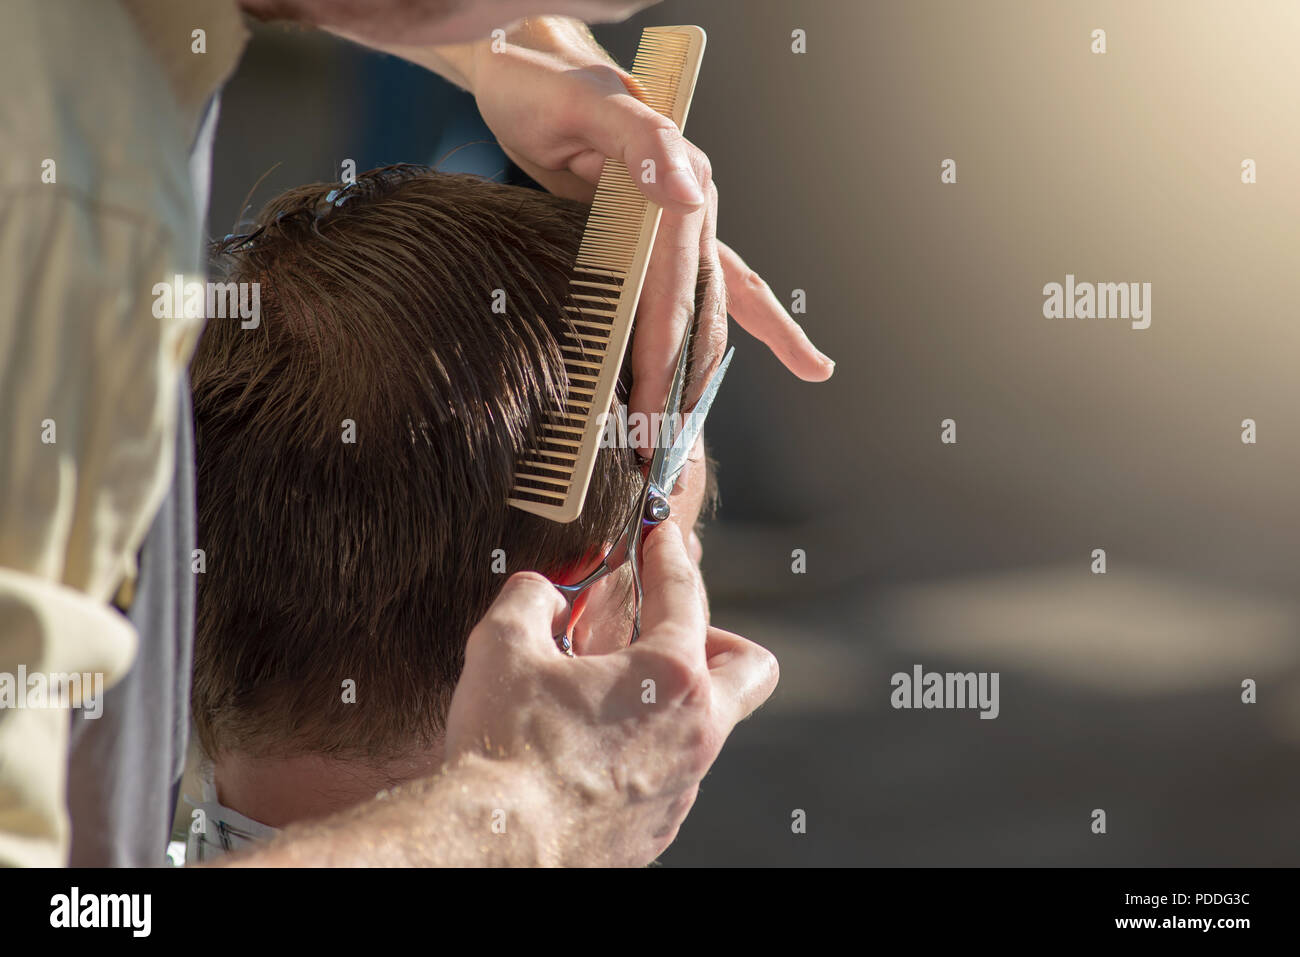 Einen Friseur in der Nähe von Schere und Kamm. Der Friseur ist ein Mann und ein Haarschnitt. Horizontale Foto mit Text platzieren Stockfoto